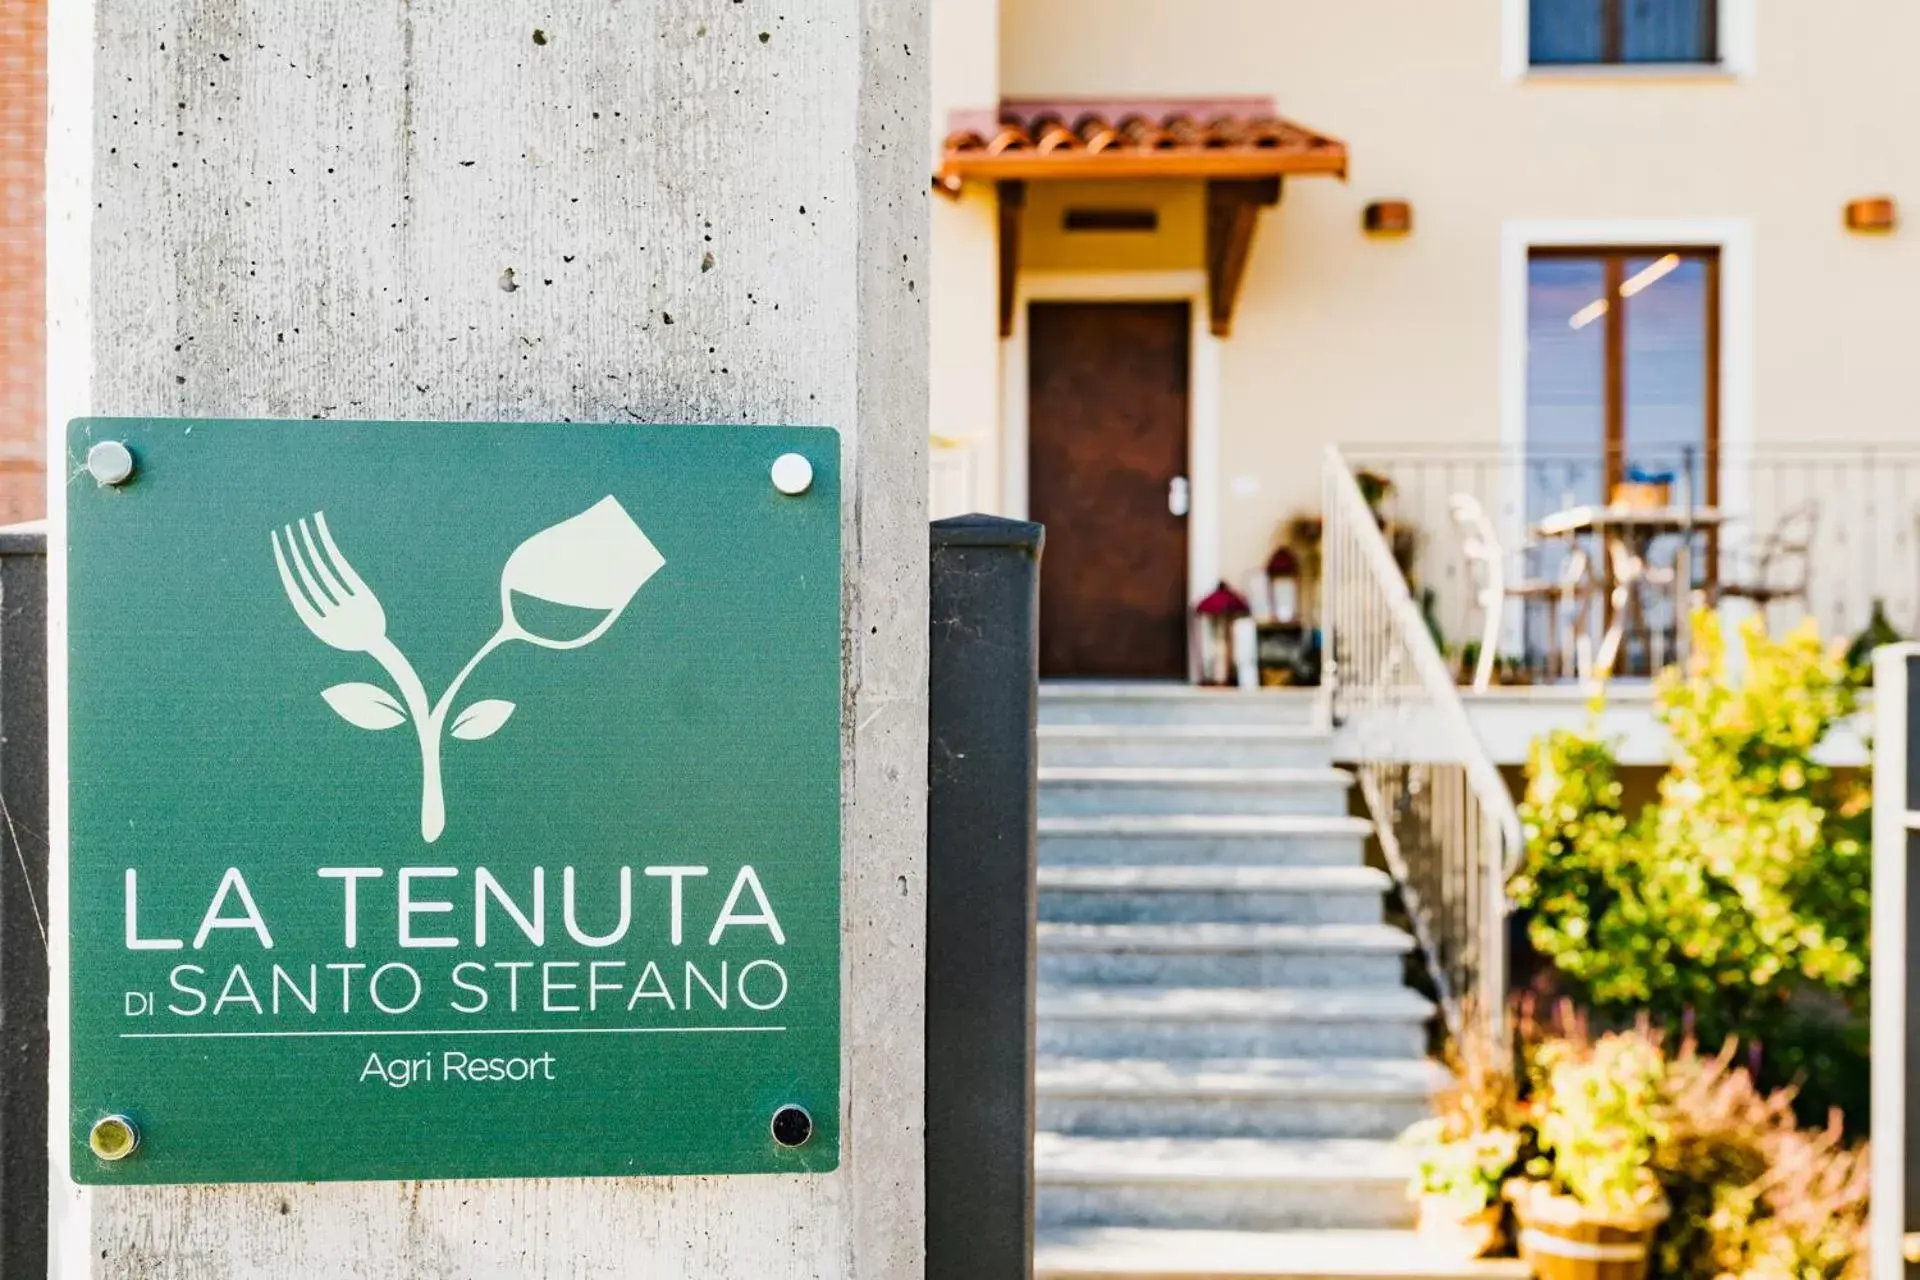 Property building in La Tenuta di Santo Stefano Agri Resort & Spa